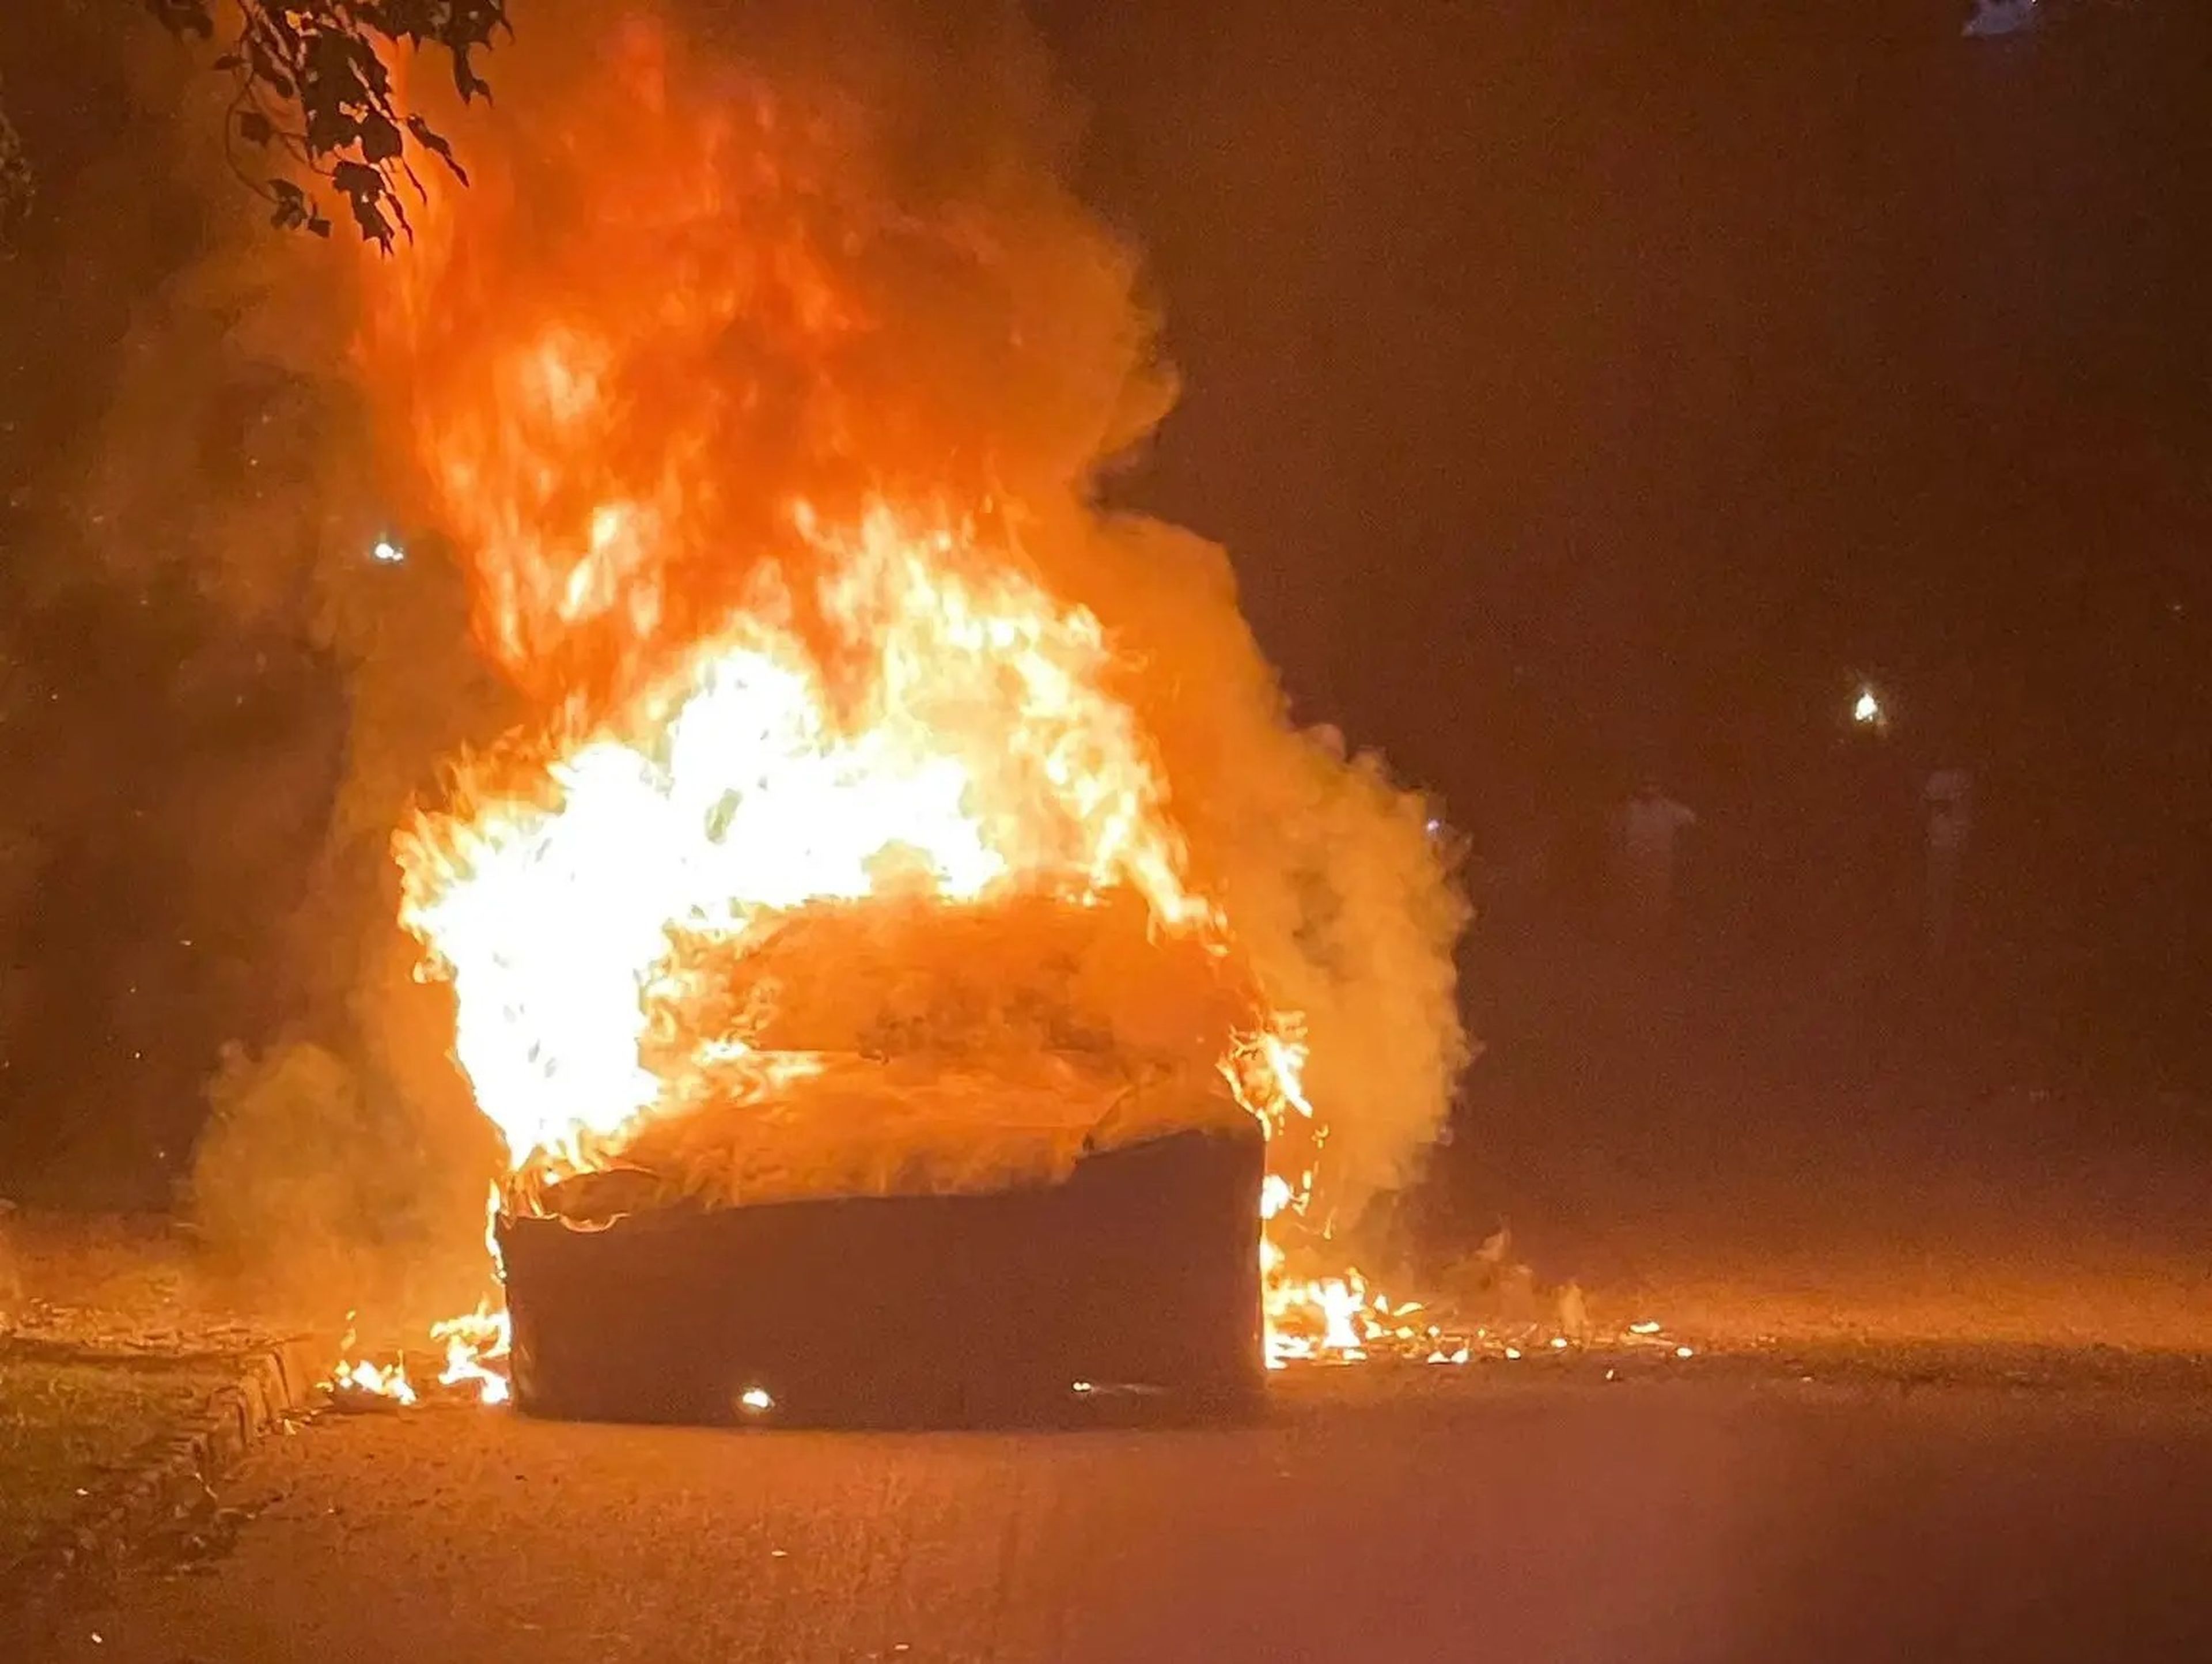 El Tesla Model S se desplazó unos 20 metros sin nadie en su interior hasta que fue totalmente devorado por las llamas, según el abogado del dueño.